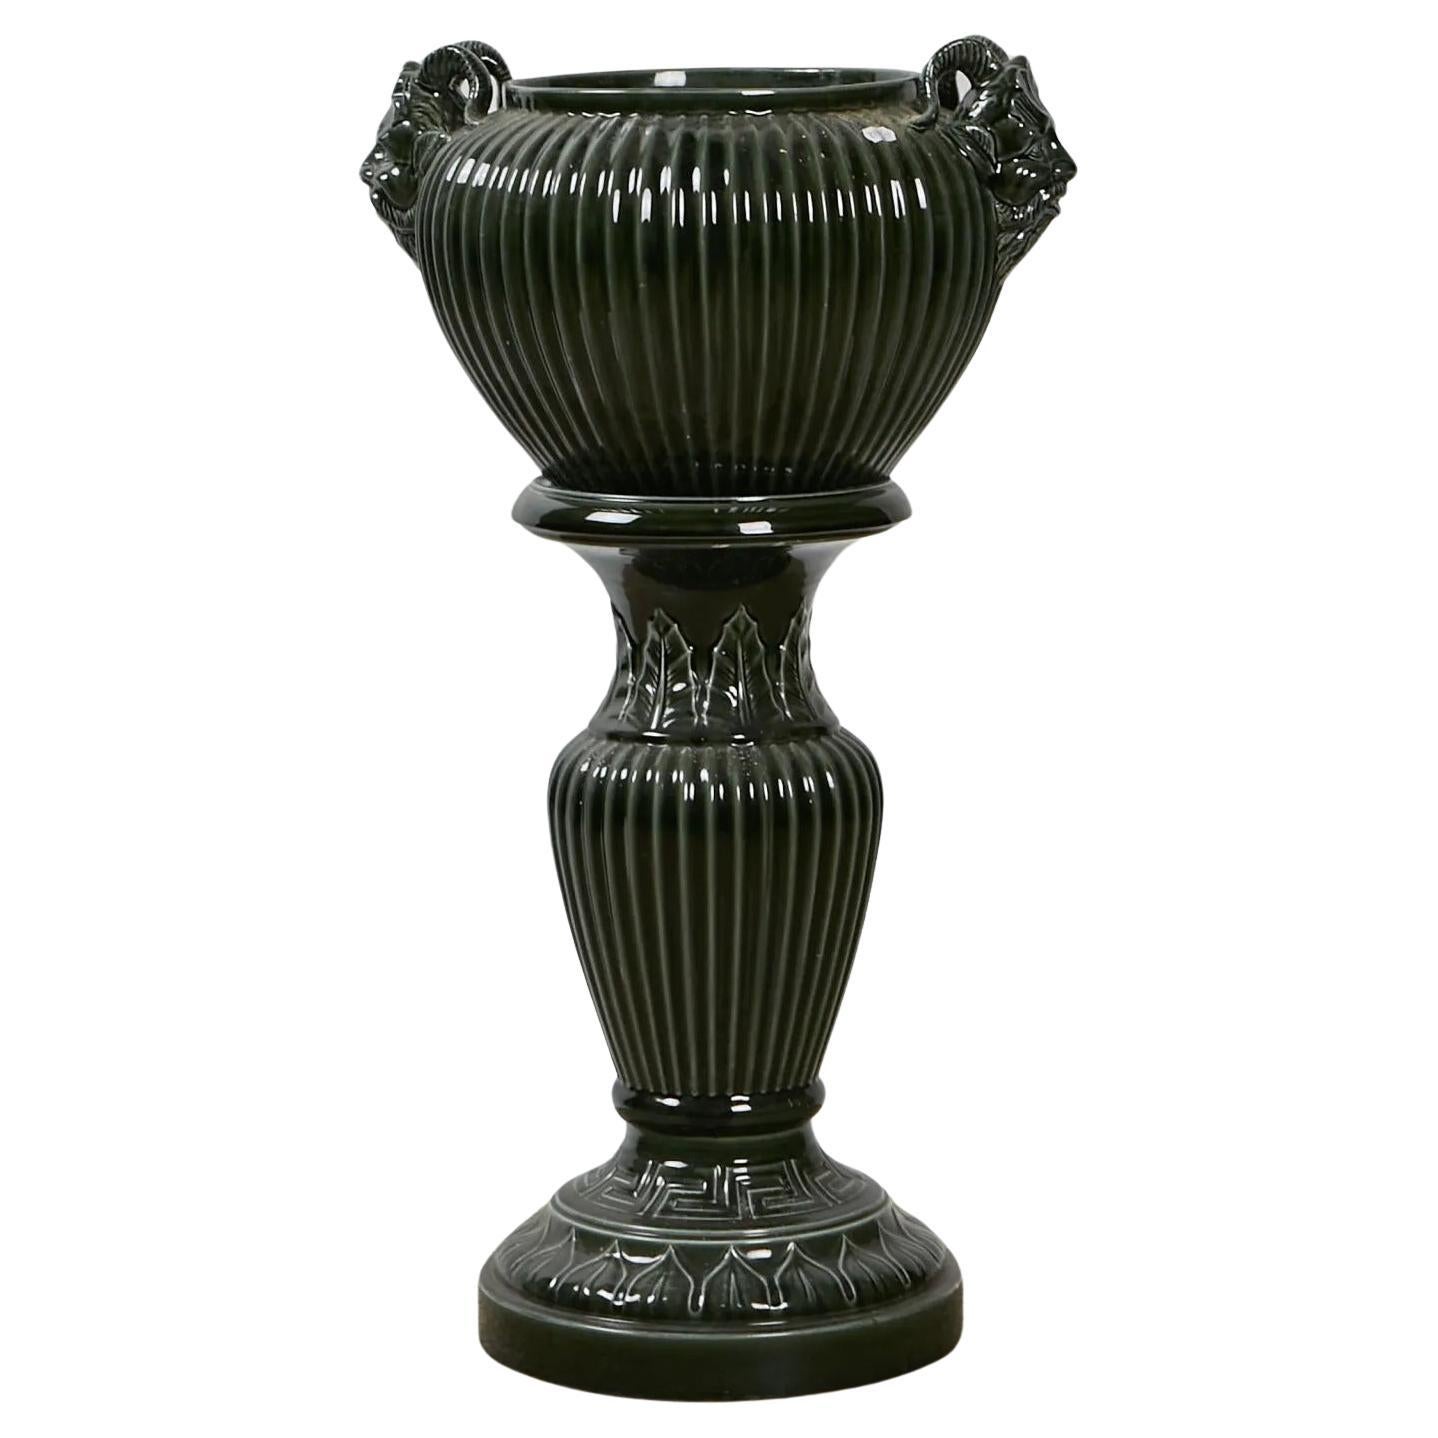 The Pedestal und seine keramische Pflanzschale um 1900